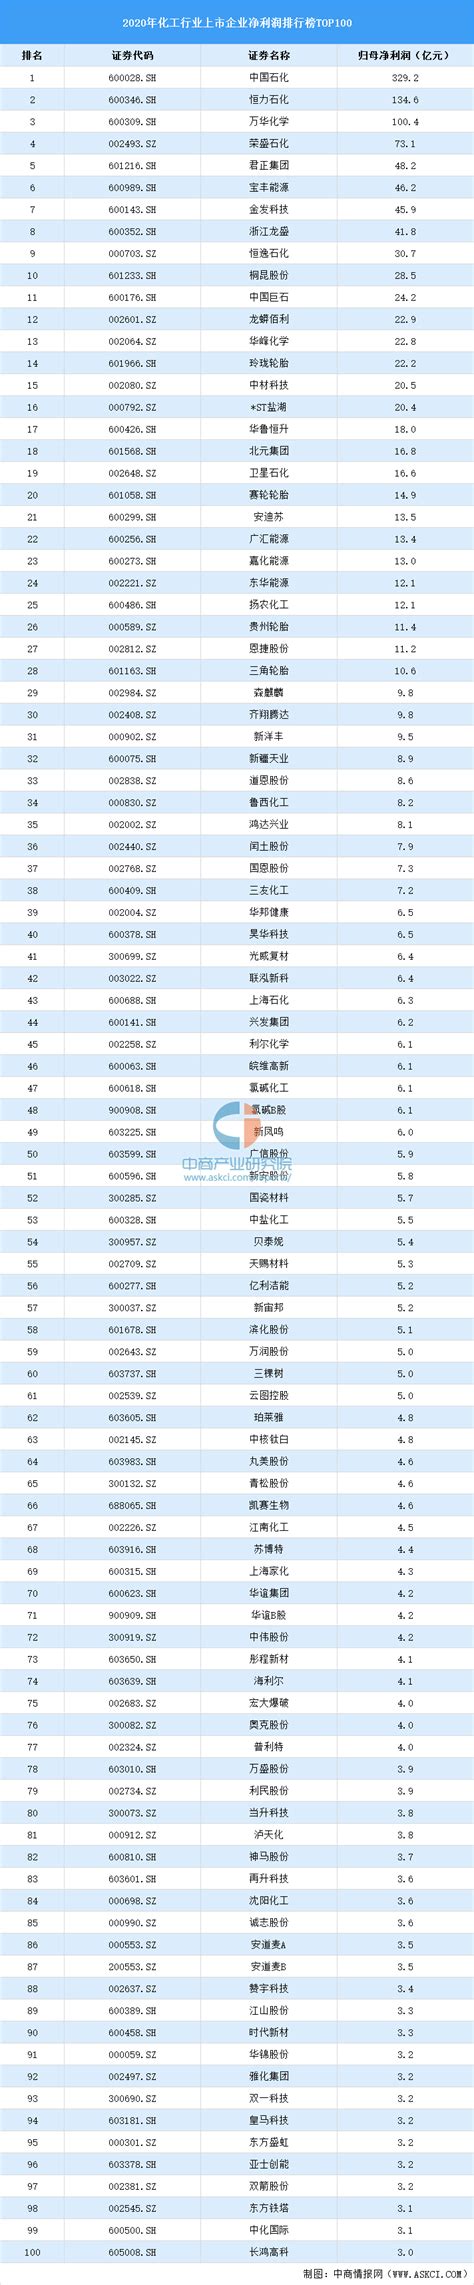 2020年中国化工行业上市公司净利润排行榜TOP100-排行榜-中商情报网